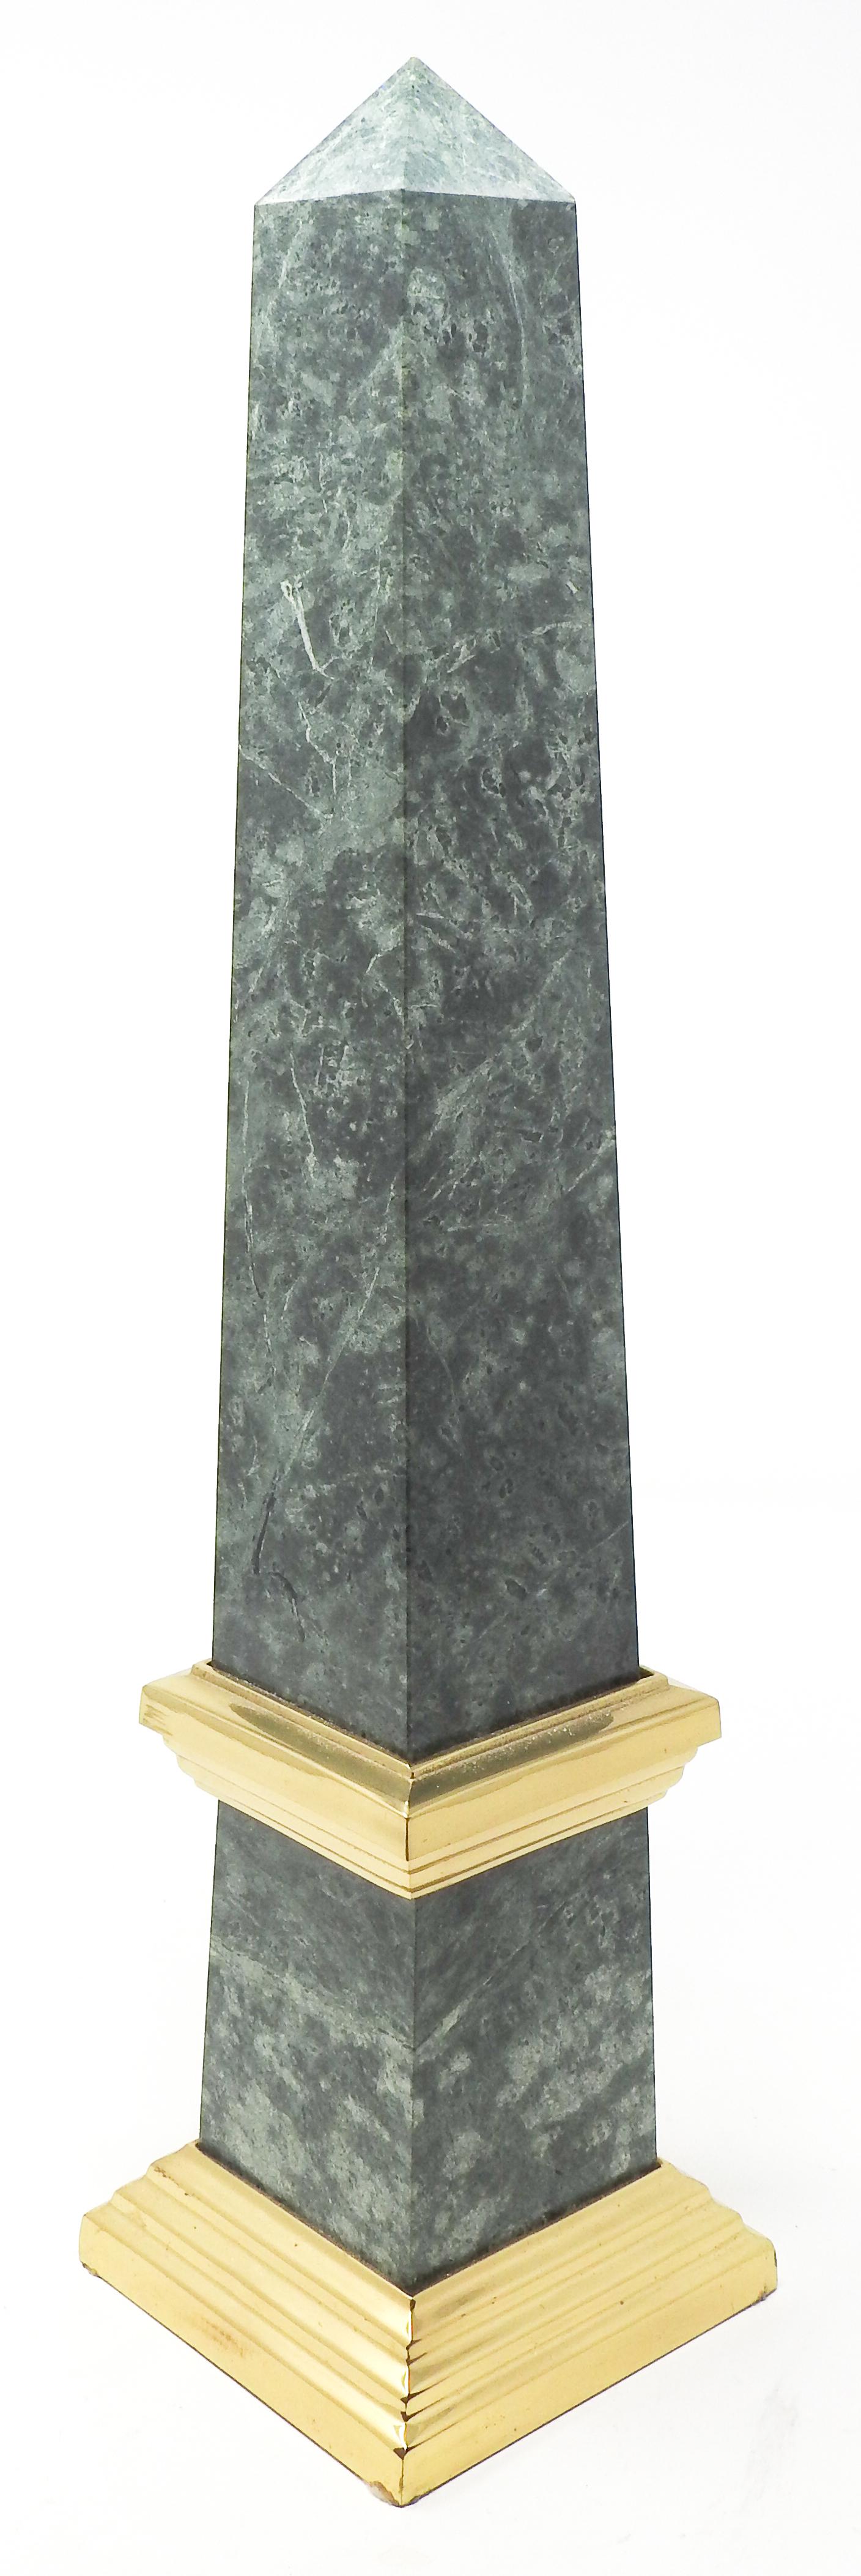 Hand-Crafted Green Marble Obelisk, Vintage For Sale